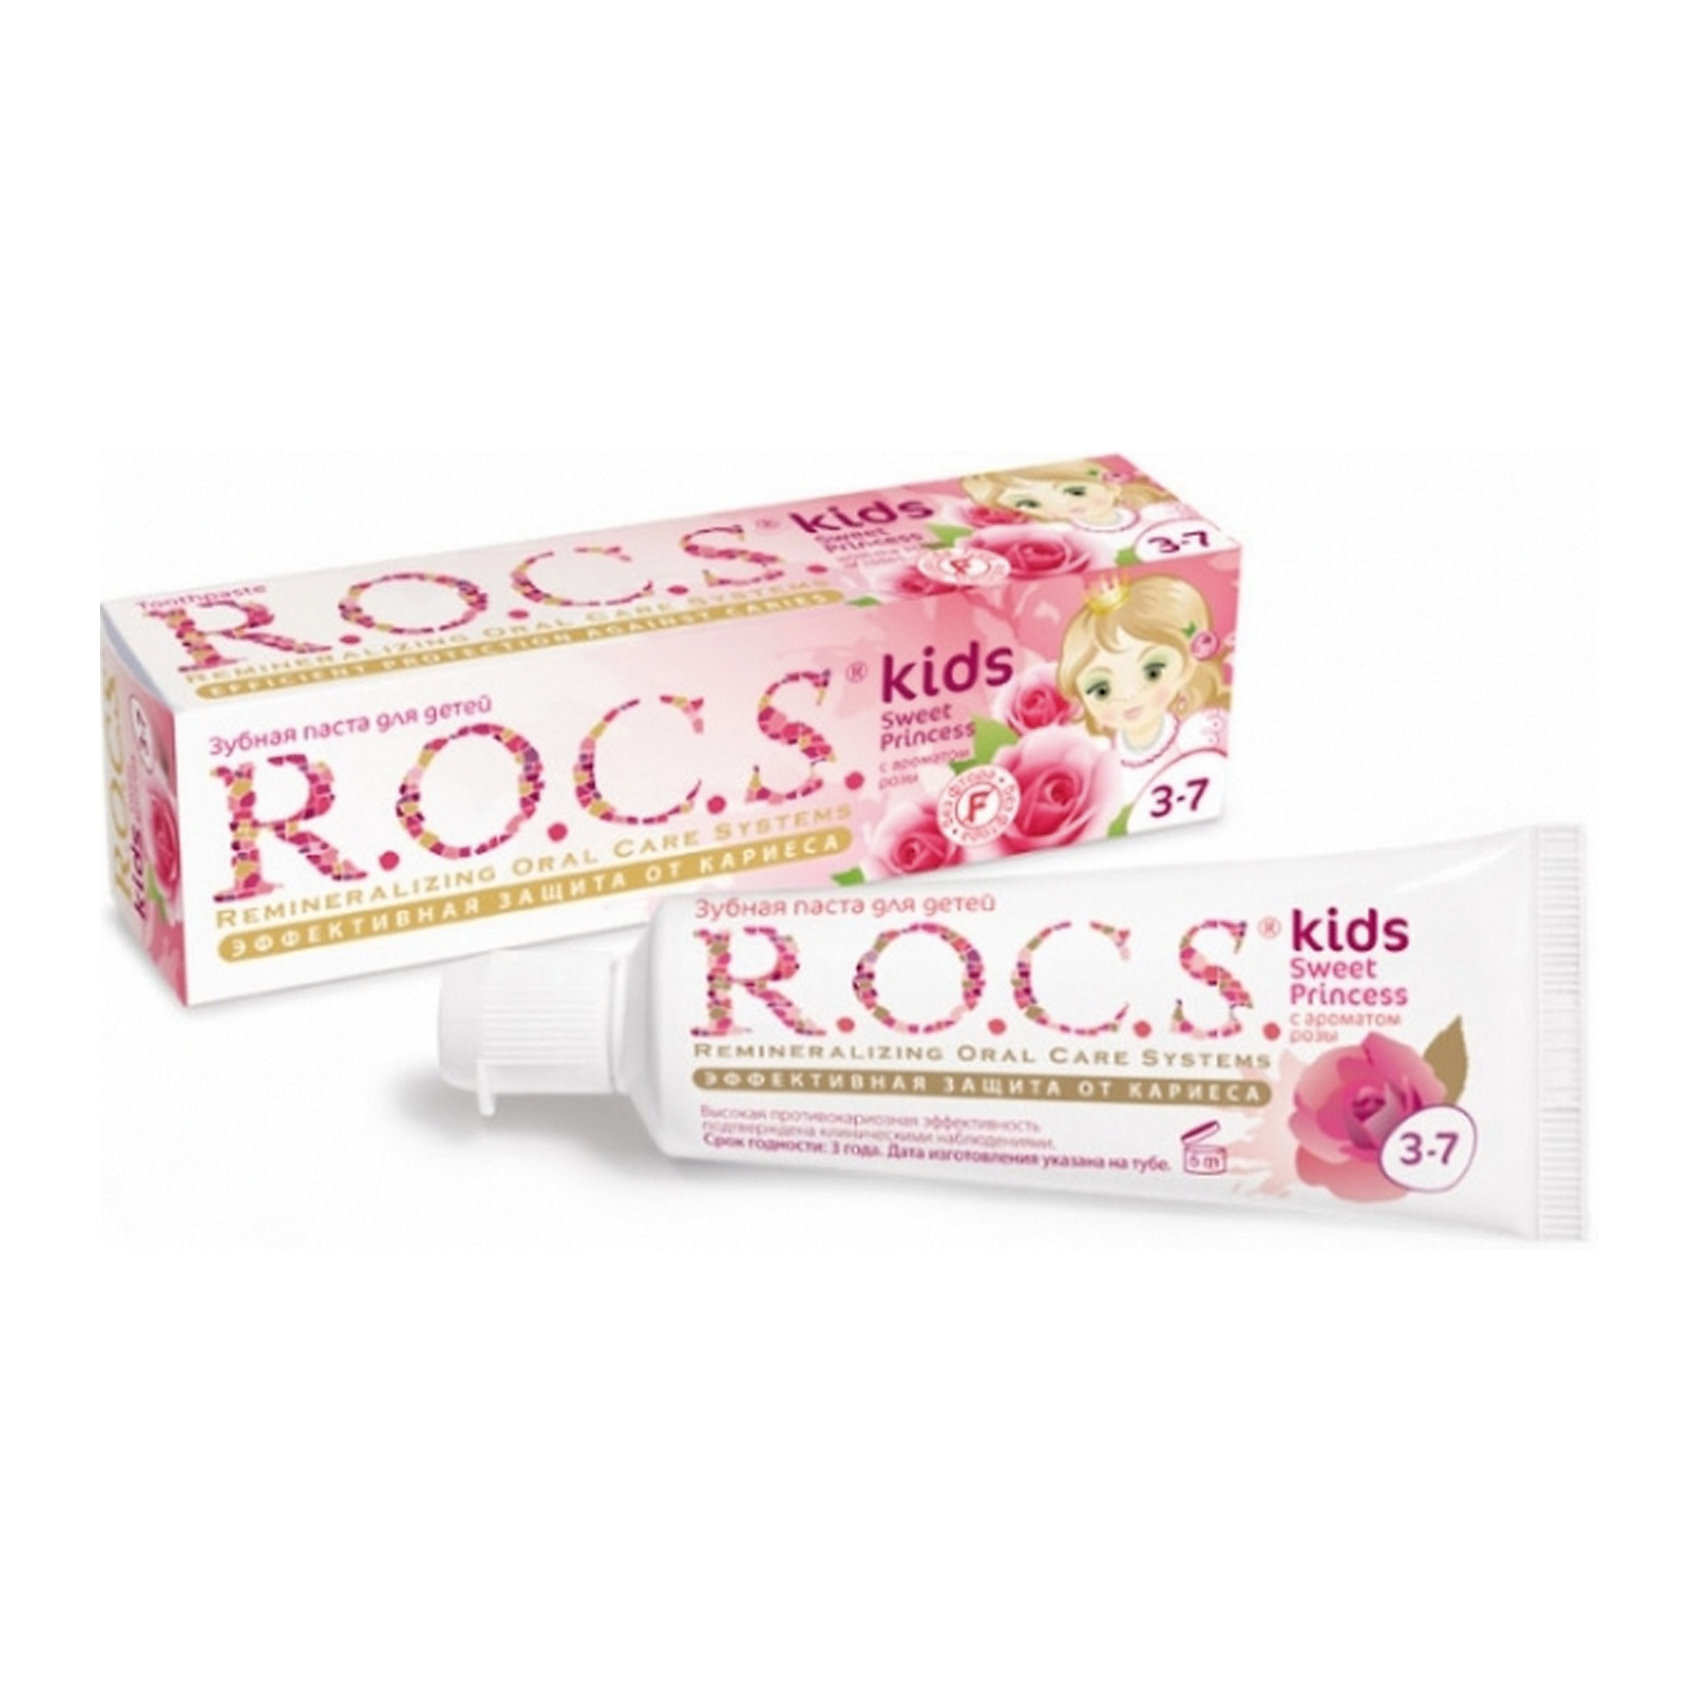 Зубная паста Sweet Princess с ароматом розы, 3-7 лет, R.O.C.S. Kids